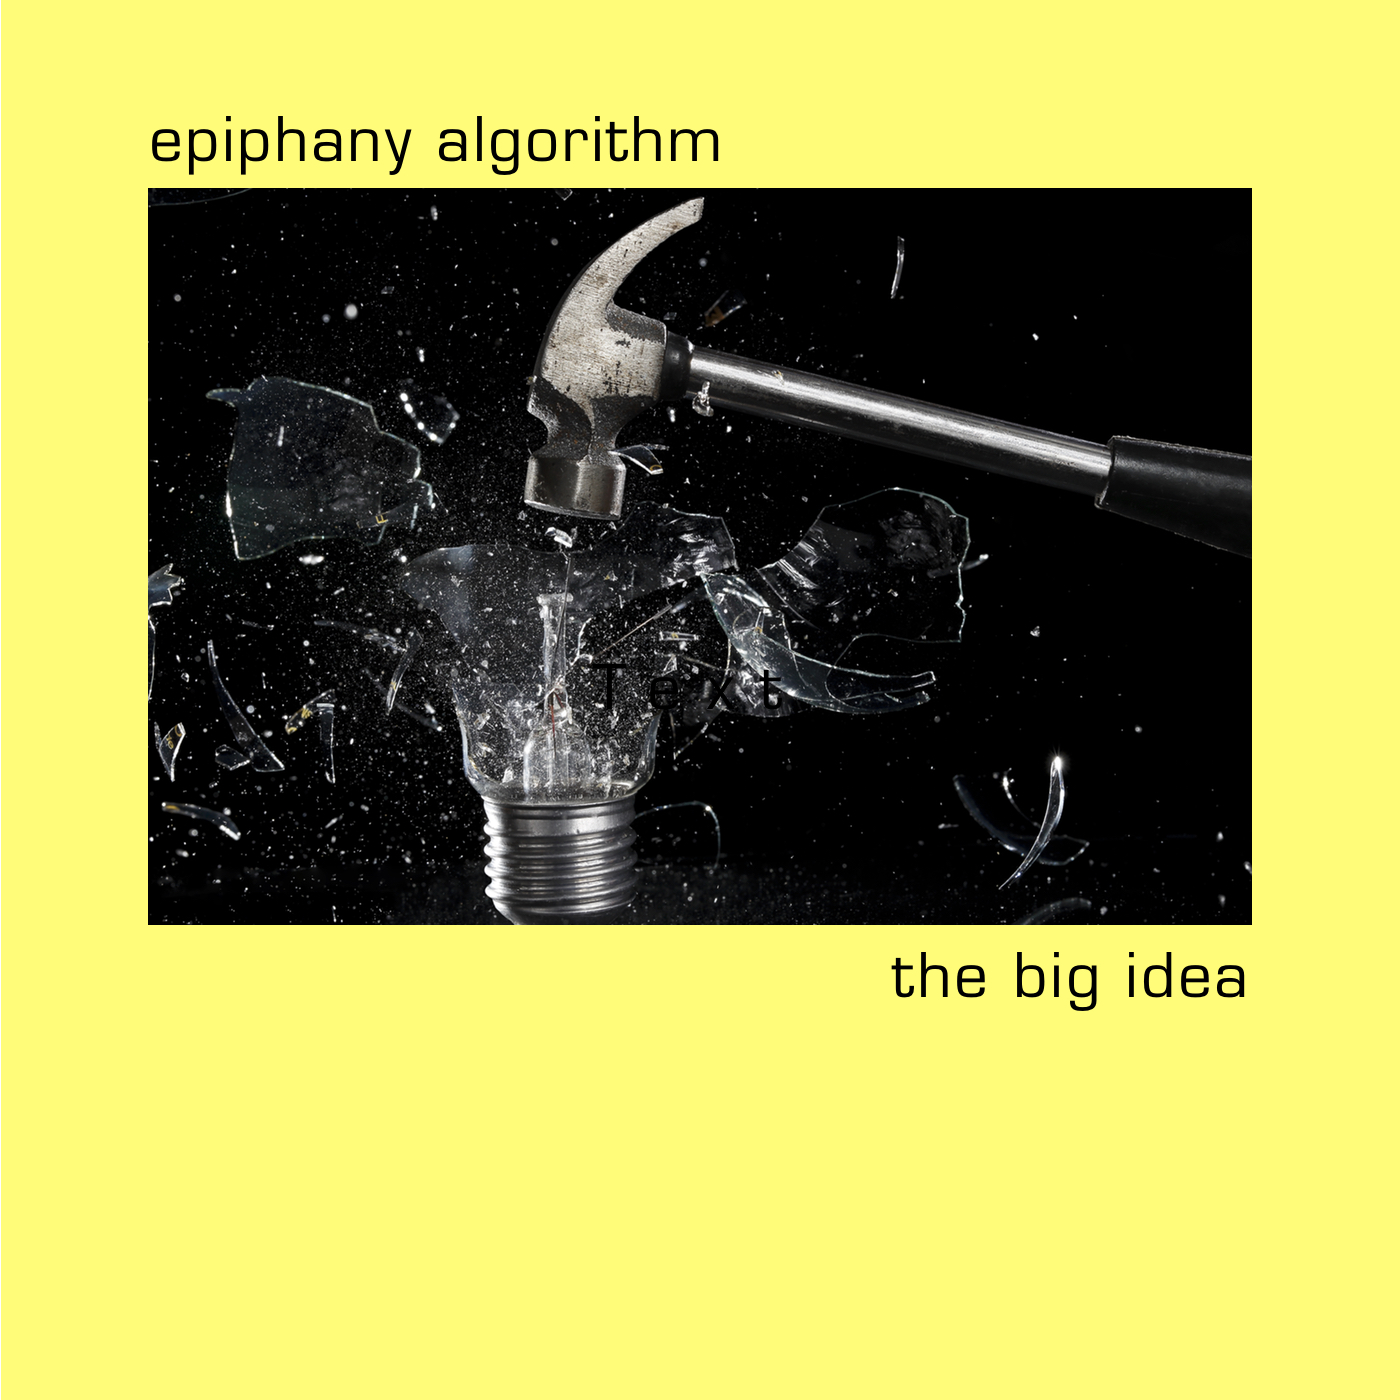 epiphany algorithm - the big idea